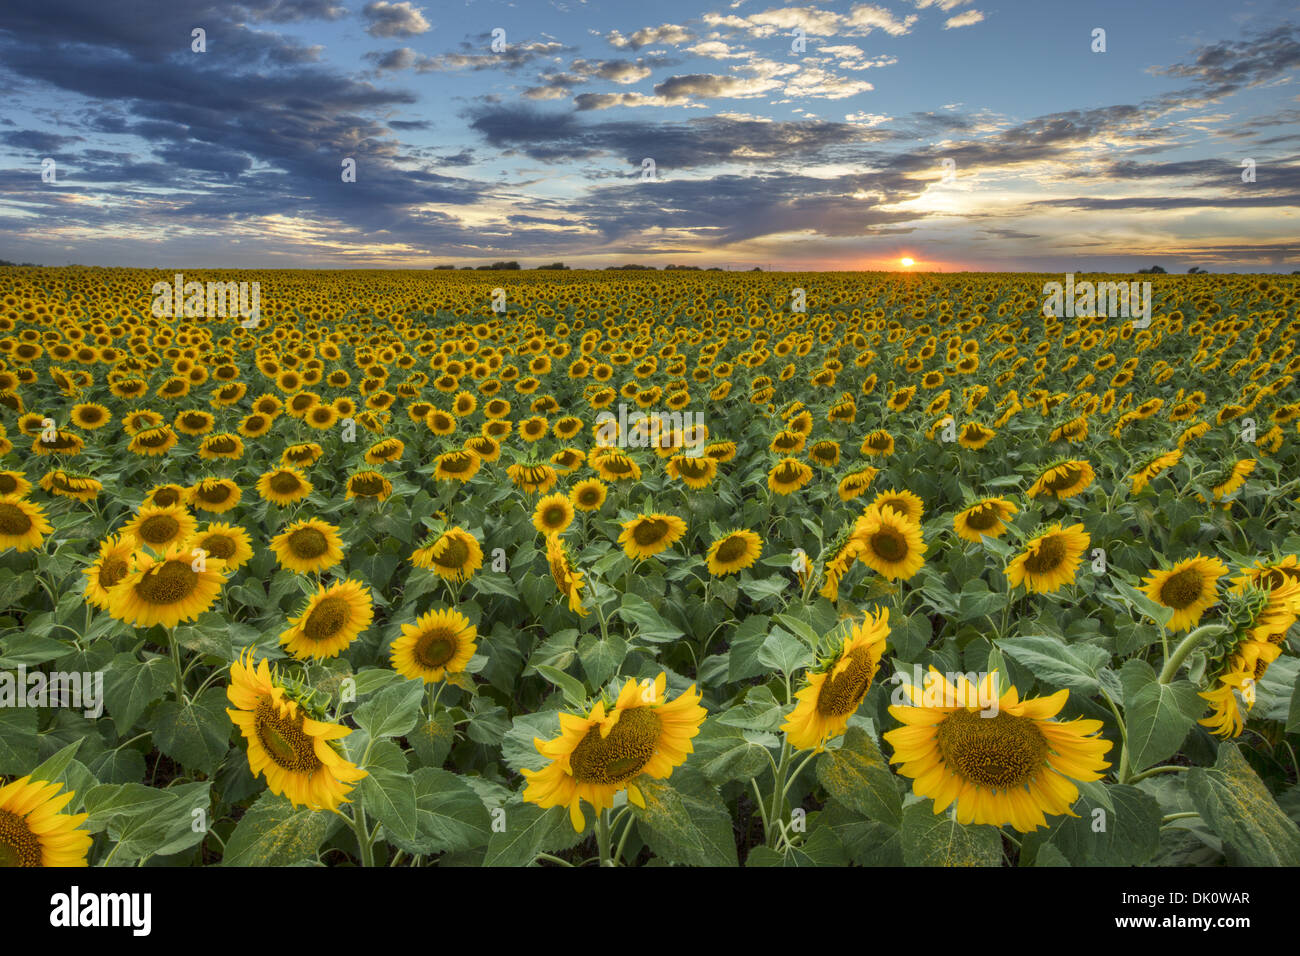 Die Sonne geht über ein Feld der goldene gelbe Sonnenblumen. Dieses Sonnenblumenfeld Bild stammt aus einer großen Ernte von Texas Wildblumen. Stockfoto